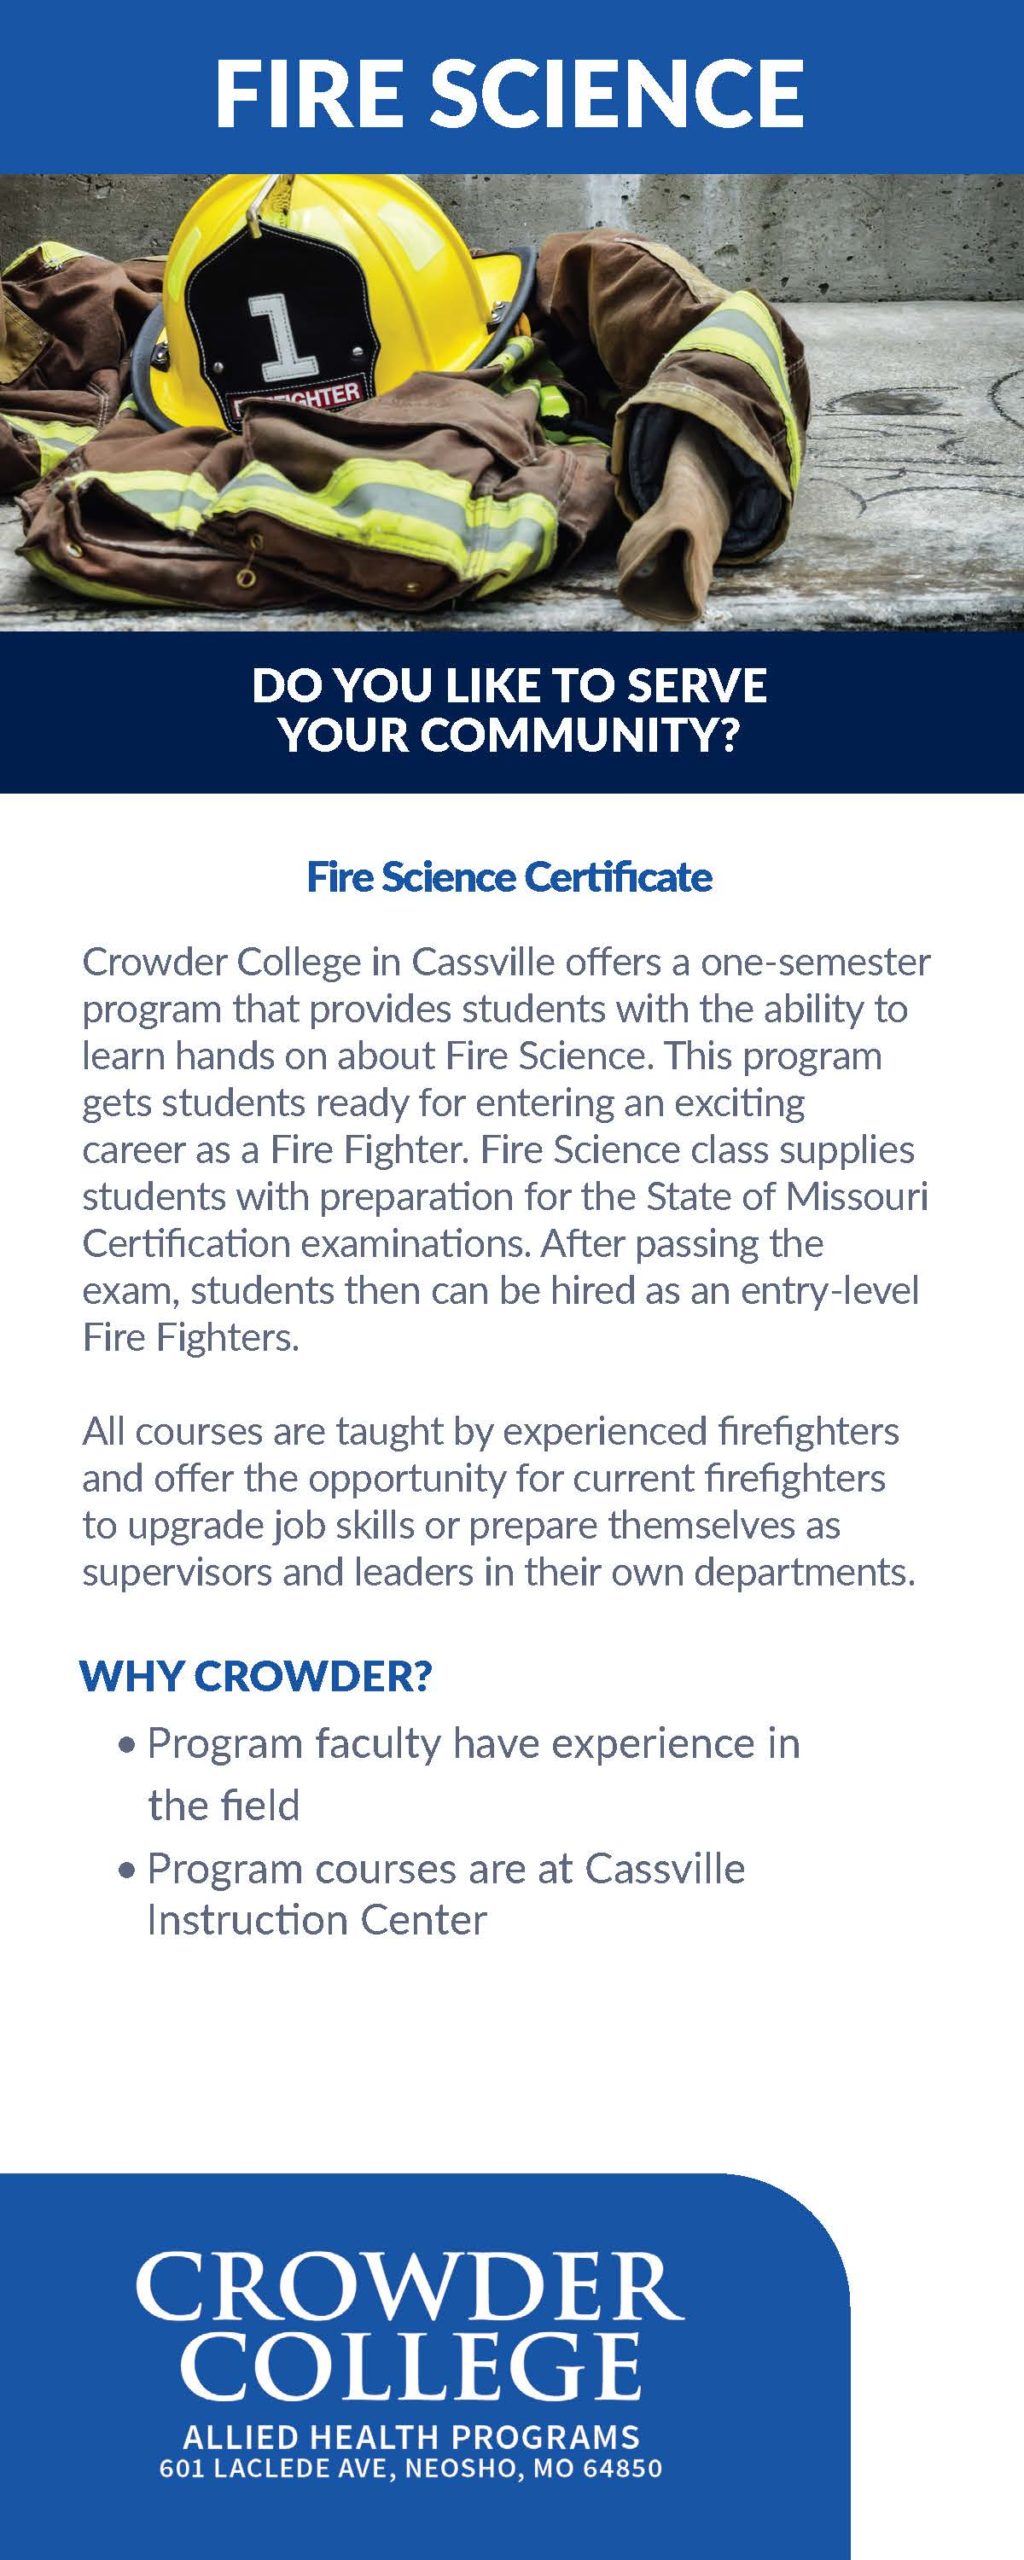 Crowder College Fire Science program information